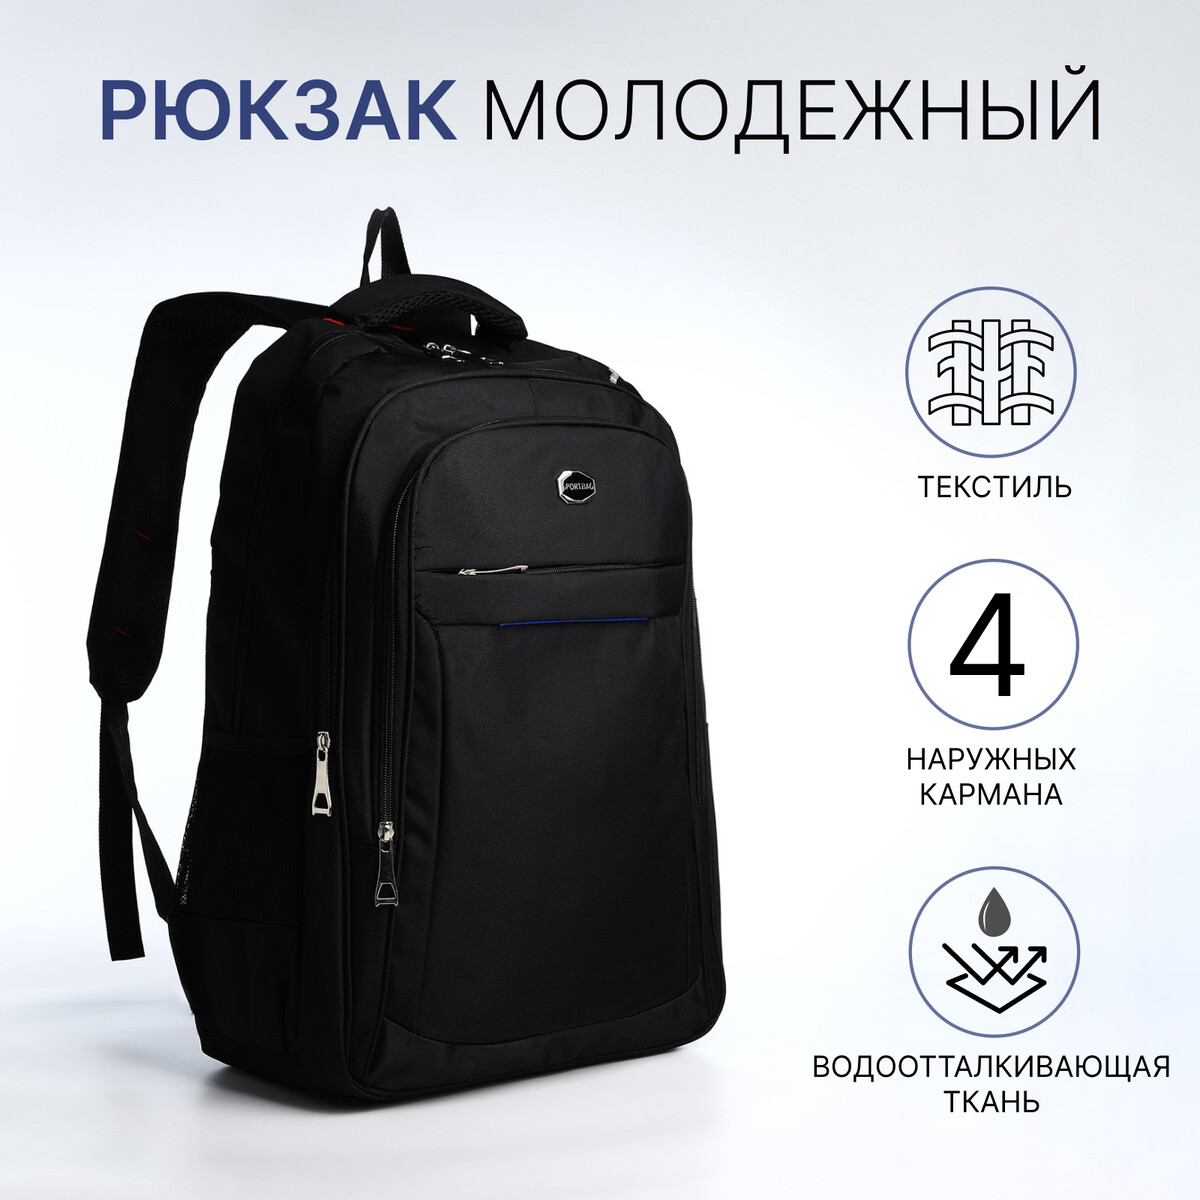 Рюкзак молодежный из текстиля, 2 отдела на молнии, 4 кармана, цвет черный/синий